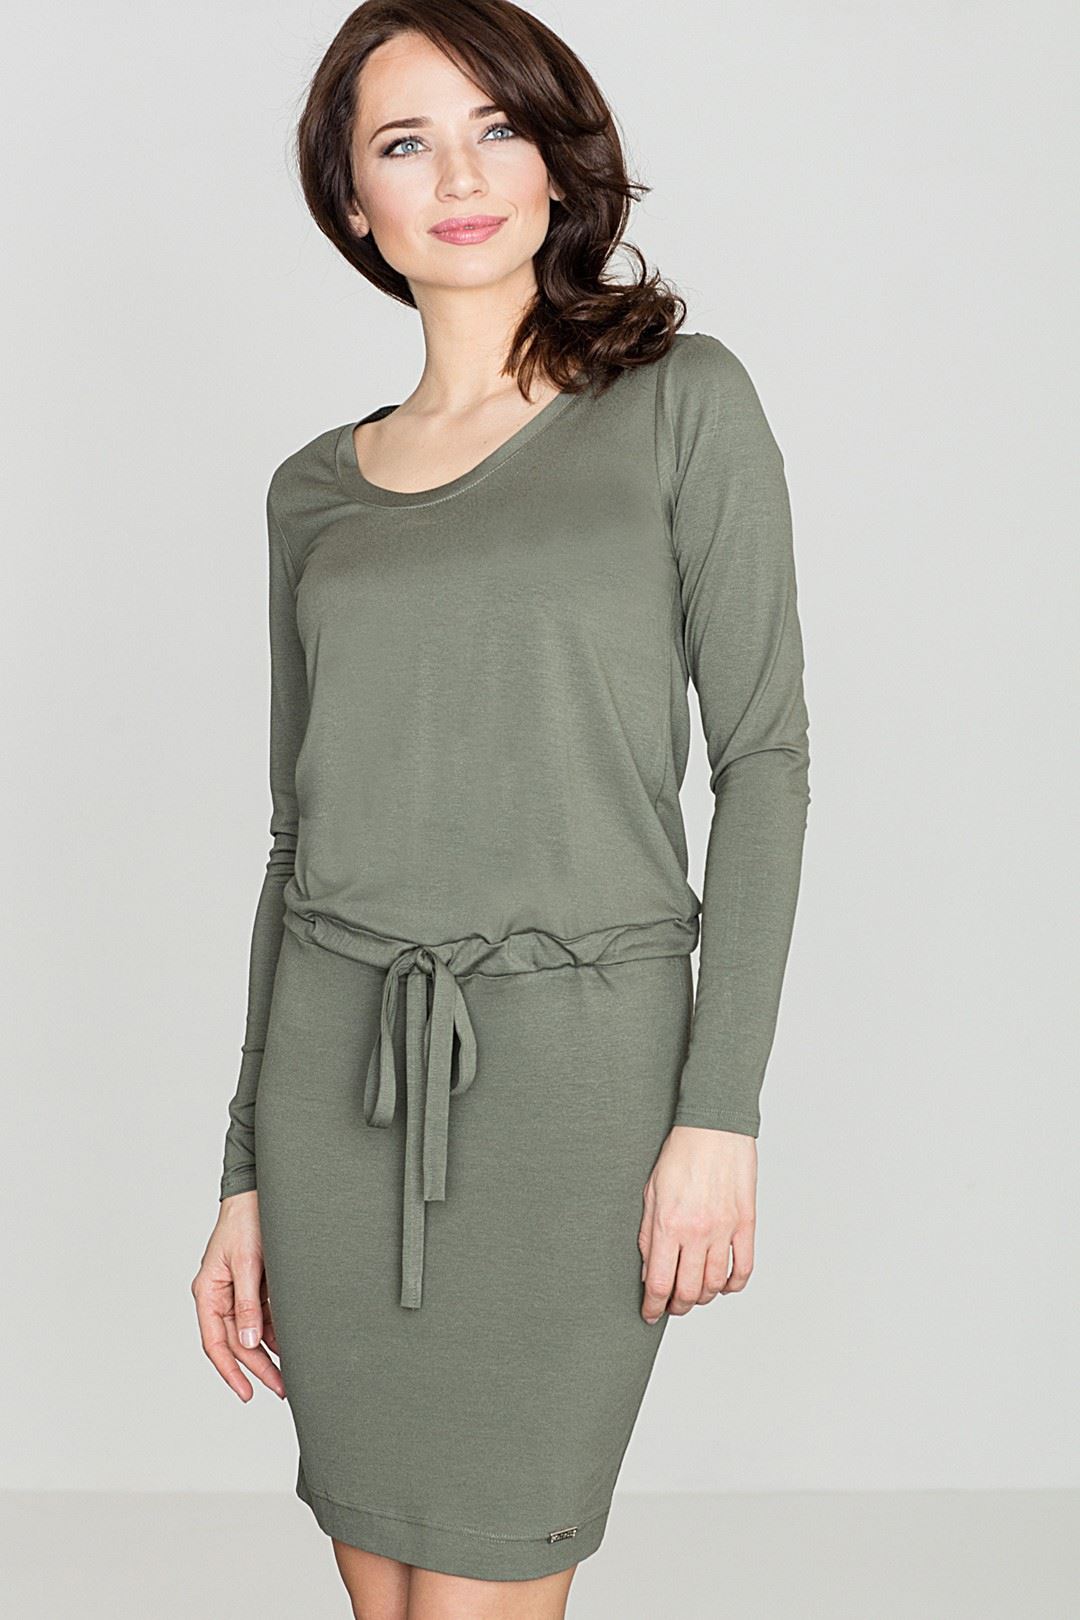 Dress K334 Olive green XL